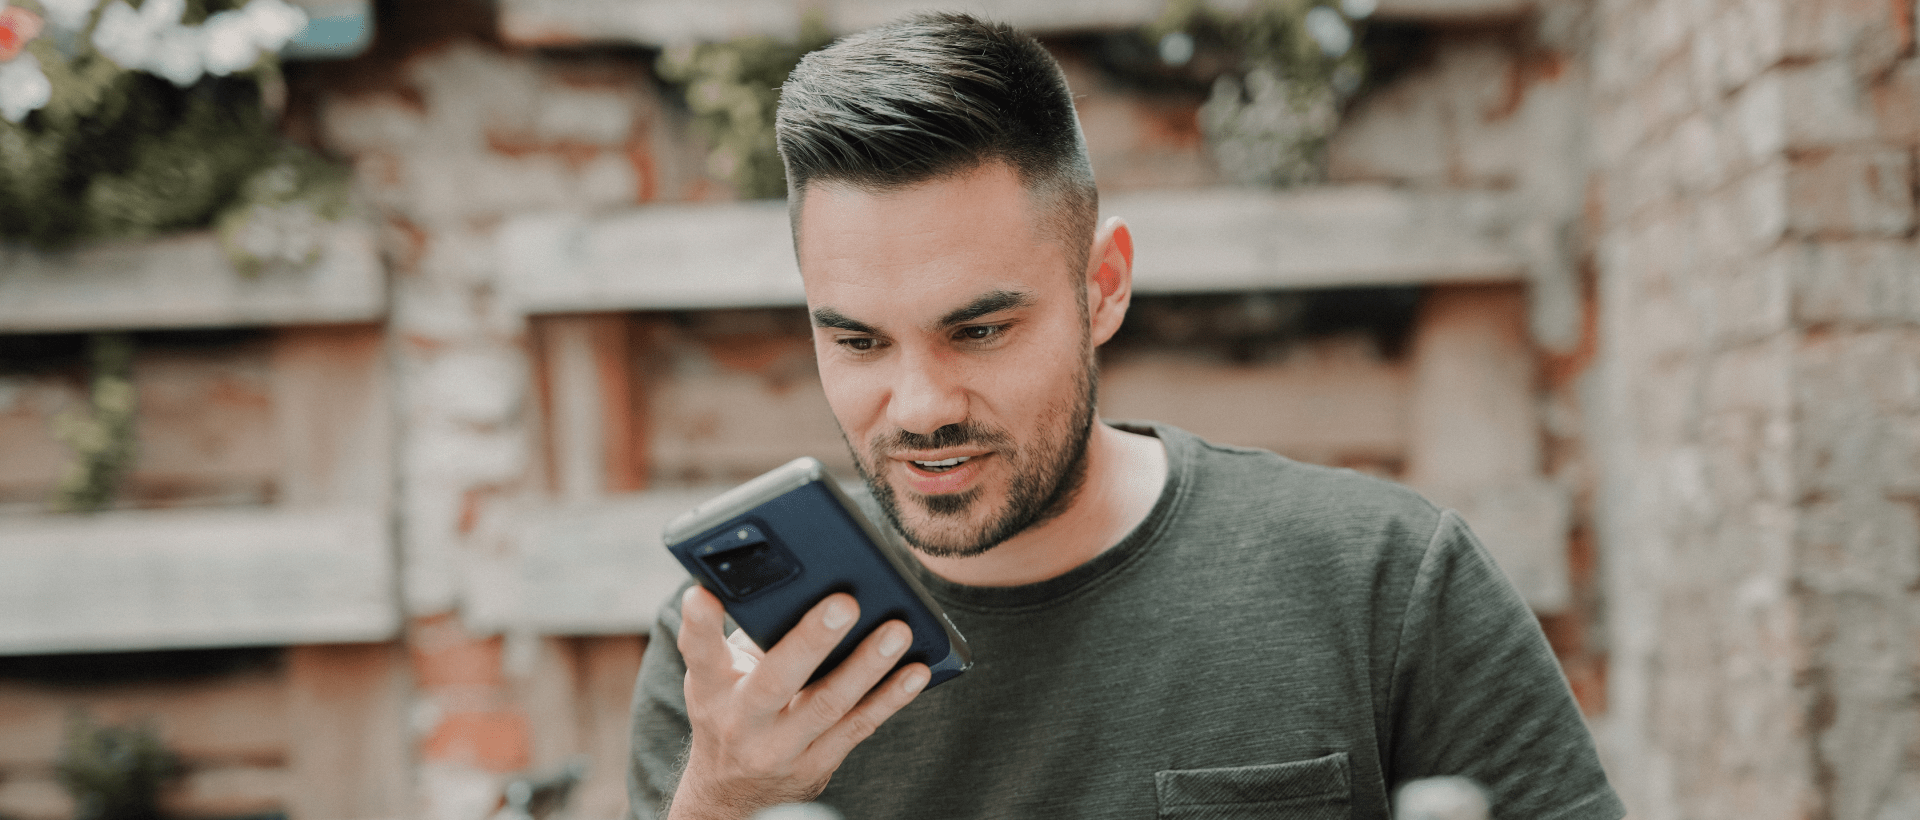 Mann nutzt Voice Assistant auf Smartphone